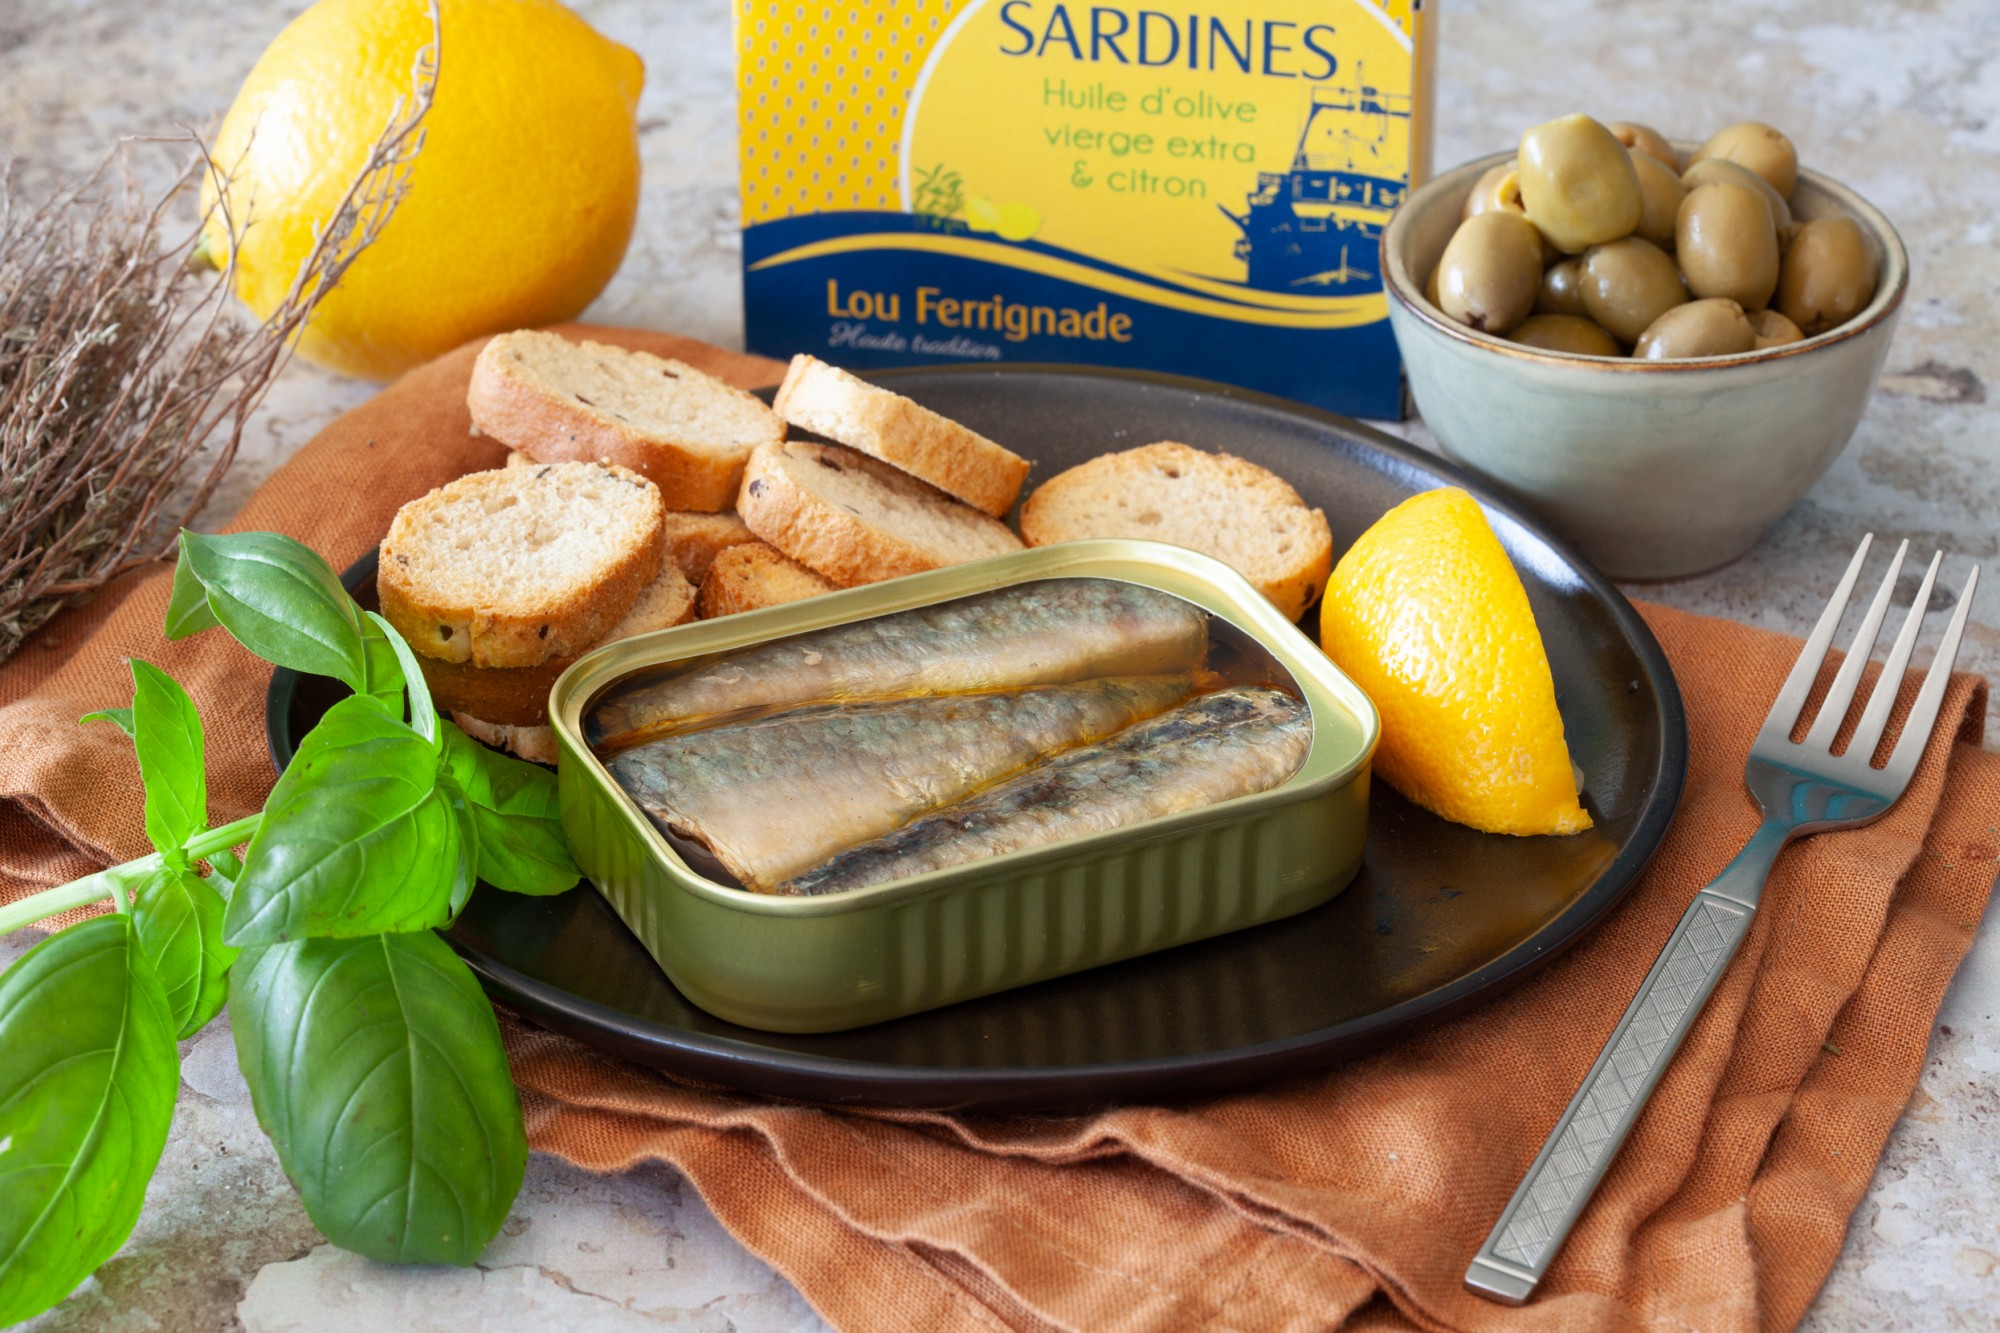 Sardines à l'huile d'olive et citron - Lou Ferrignade - 115g